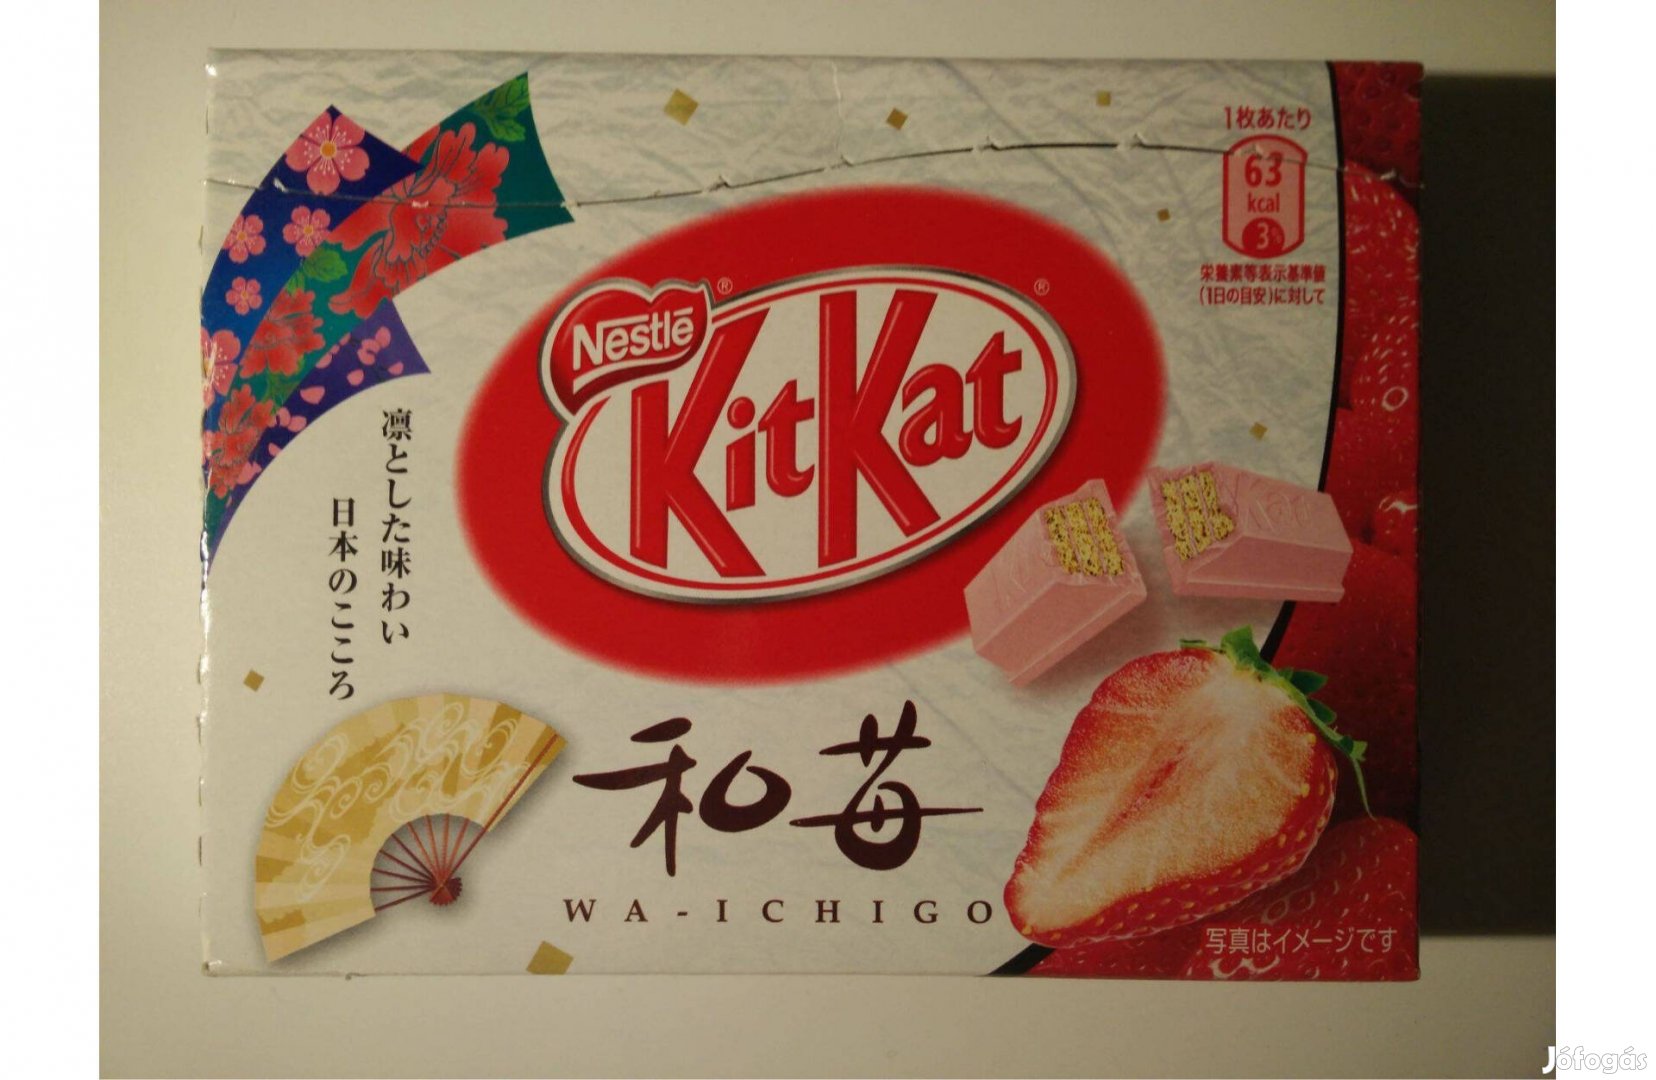 Eredeti japán Nestlé Kitkat csokis doboz